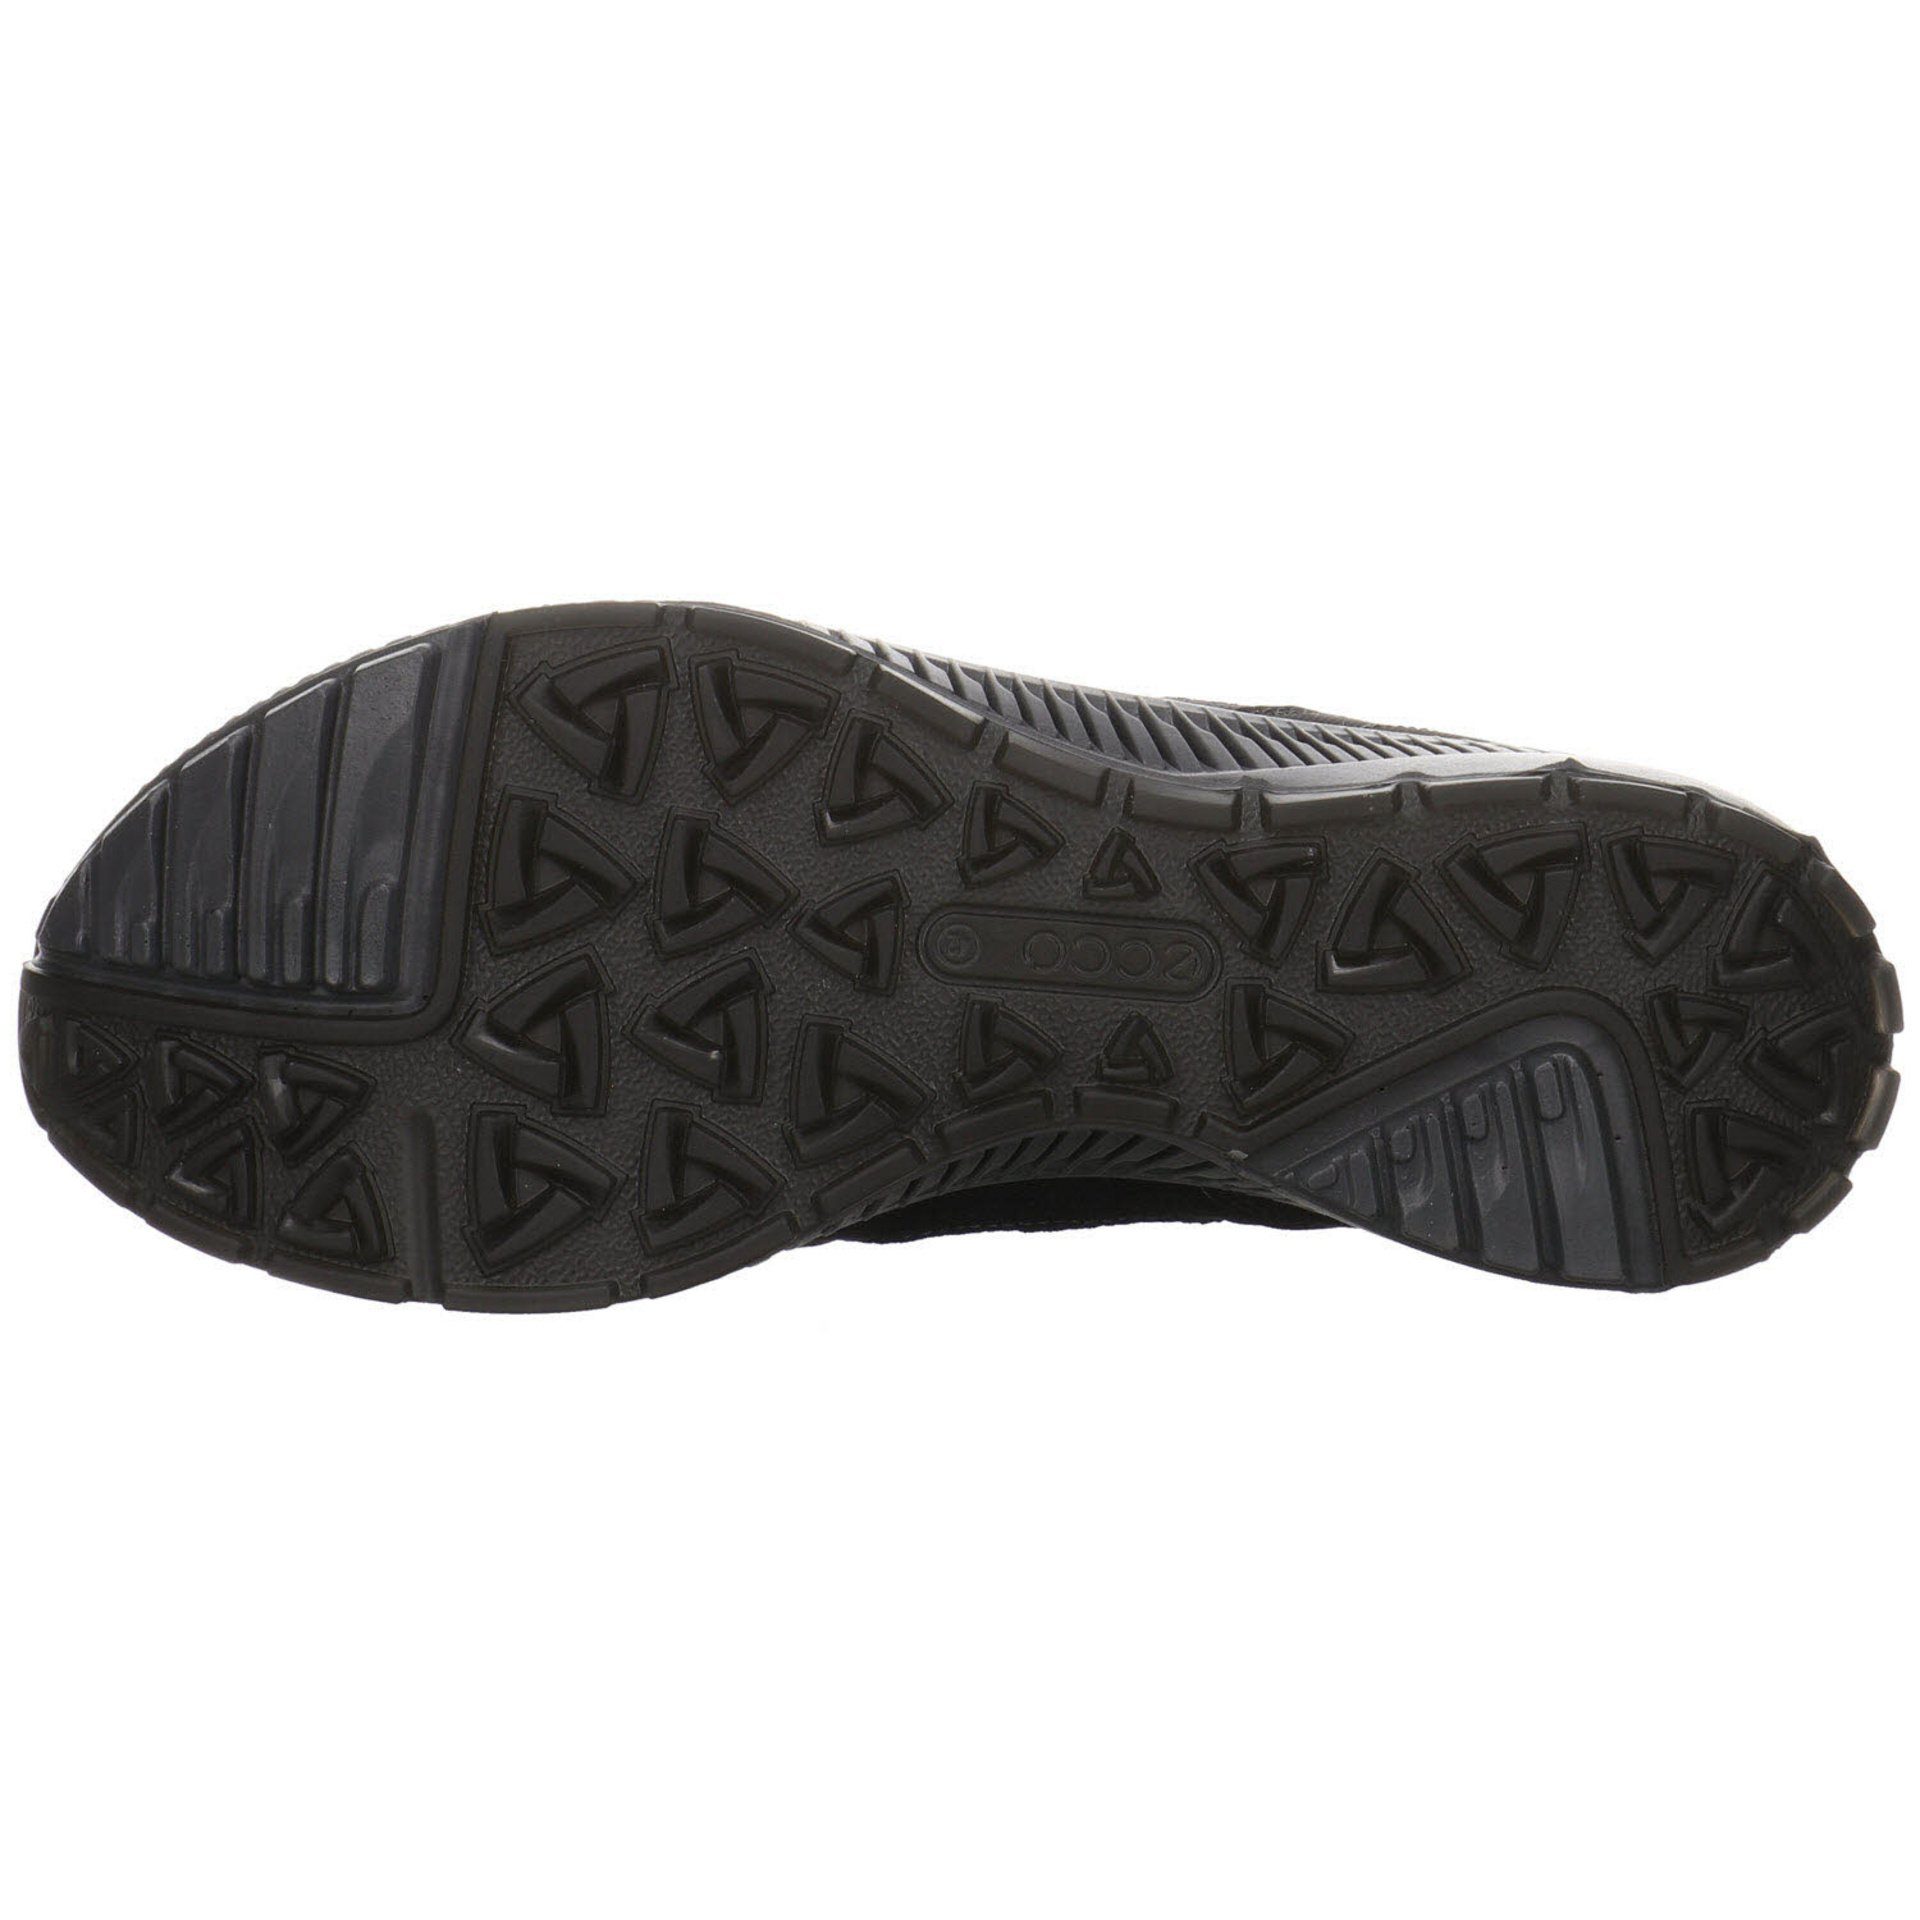 Herren Outdoorschuh Schuhe Synthetikkombination GTX Ecco Terracruise Outdoor dunkel Outdoorschuh schwarz